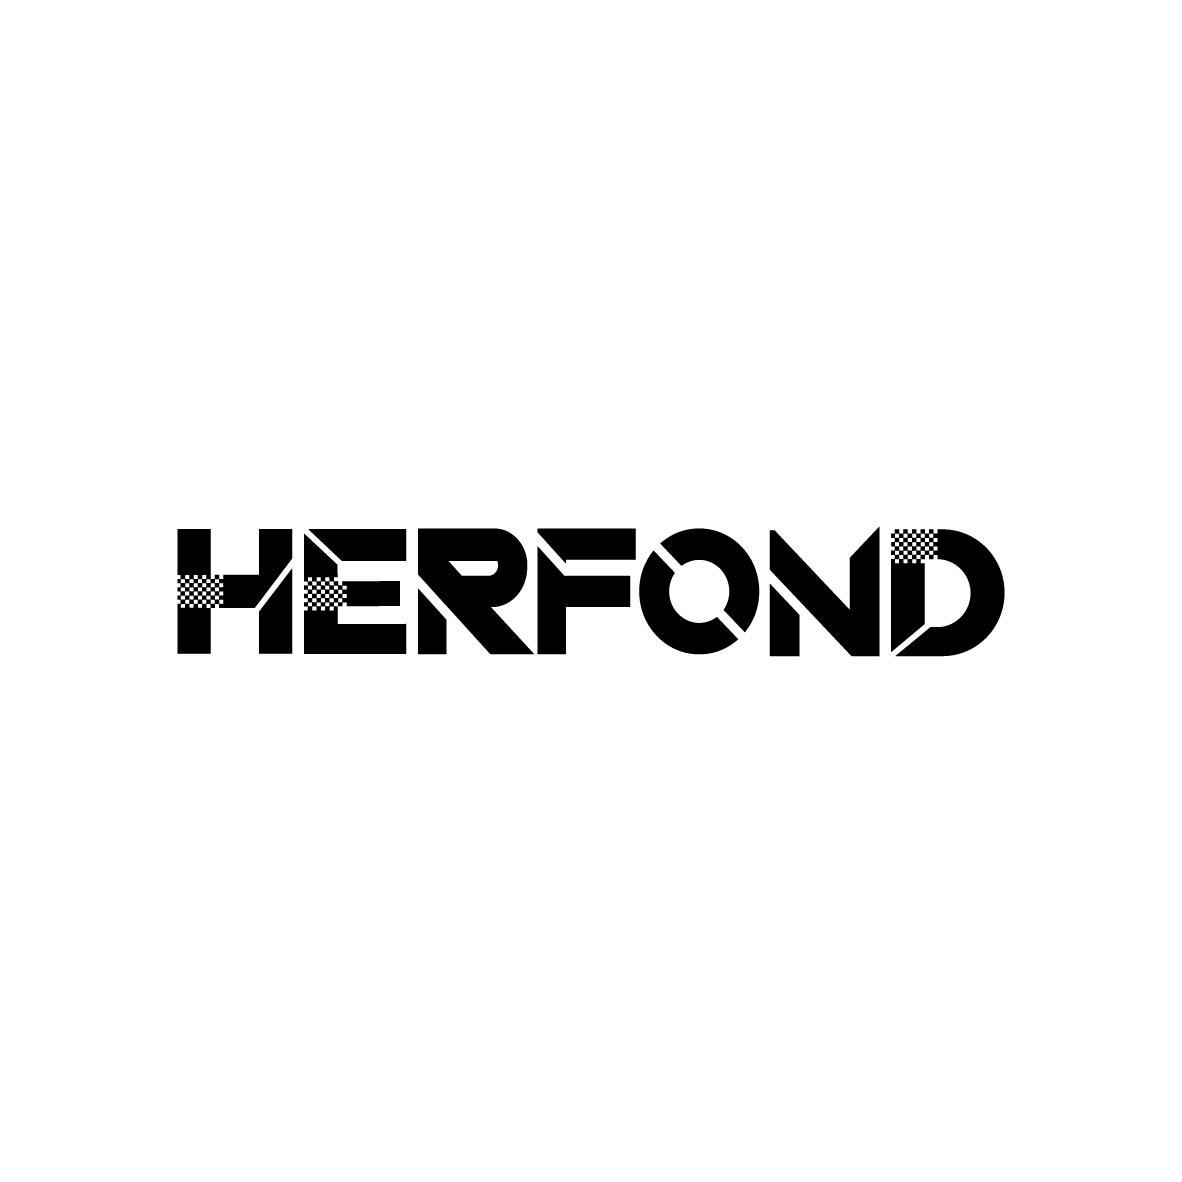 HERFOND